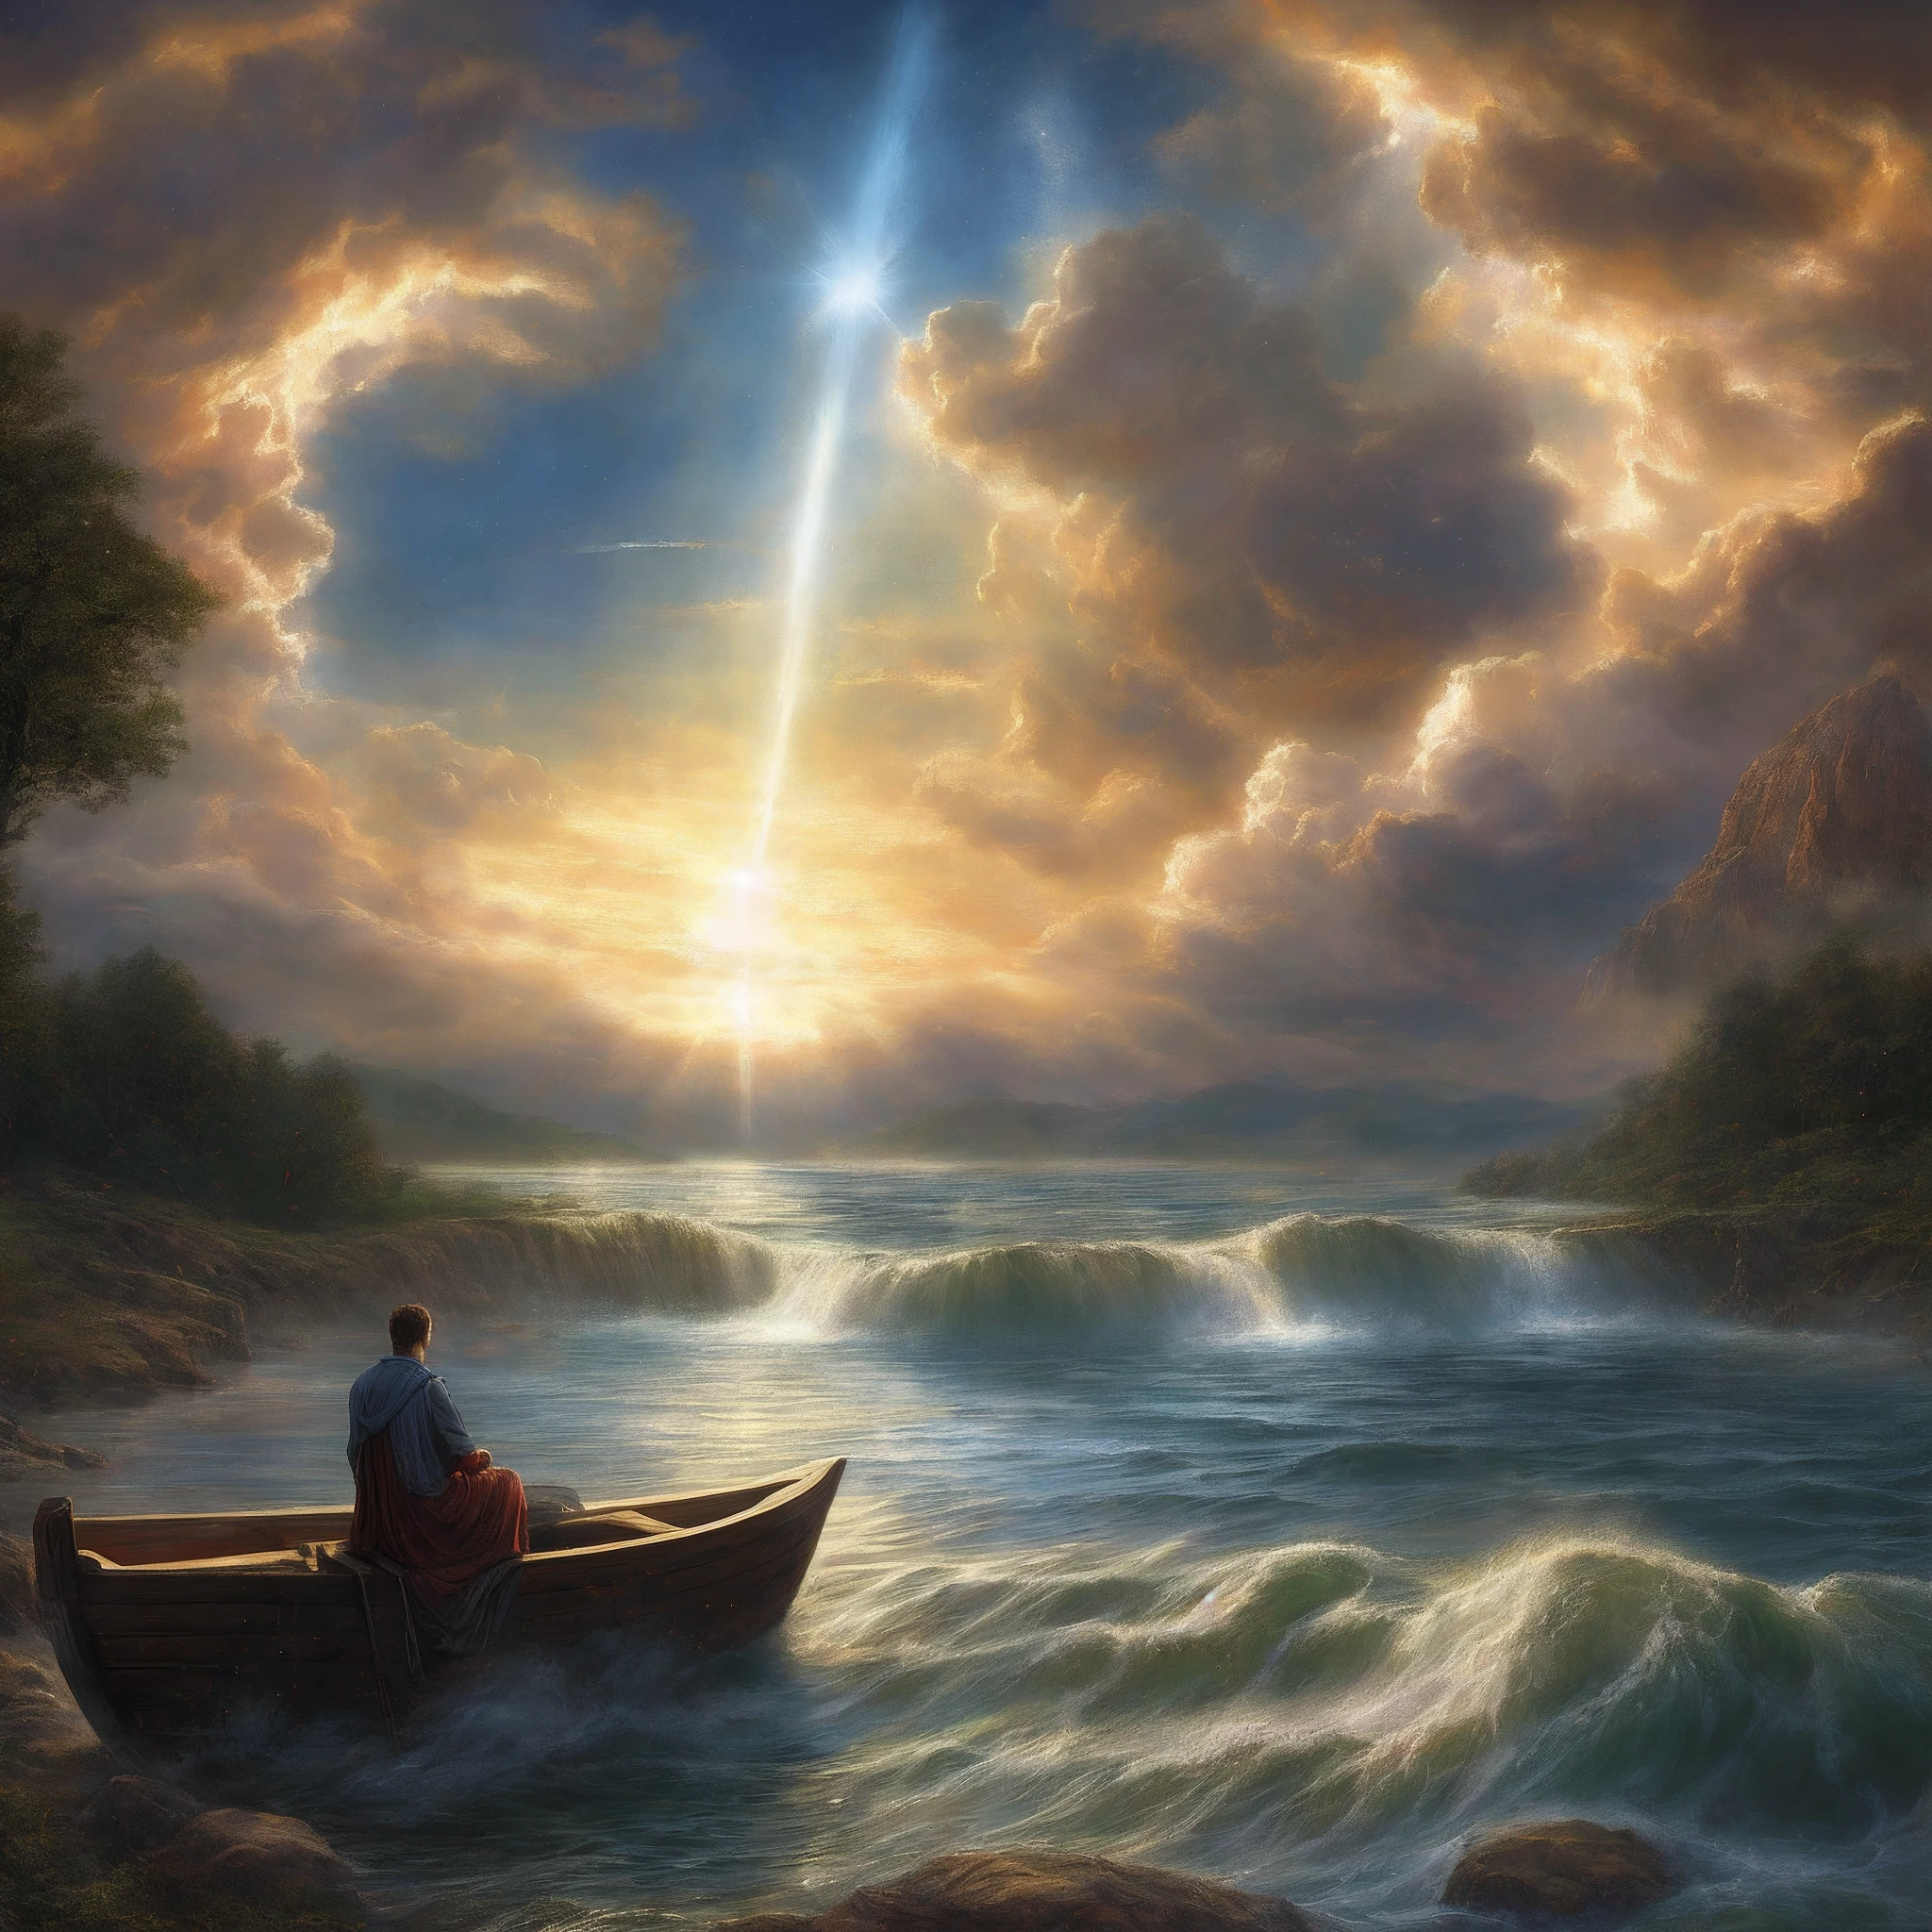 ⁶そして神は言われました:
  —水の真ん中に大空があり、水と水が分離されているようにしましょう.
⁷そして神は大空と大空の下の水と大空の上の水の間の分離をしました. そして、それは起こりました.
⁸そして神は大空に呼ばれました "天国". 午後と午前がありました, 2日目. 

創世記1章:6-8, 湖のボートに座っている男の絵, inspirado em クリストフ・ヴァシェ, マーク・キースリーに触発された, 監督: クリストフ・ヴァシェ, ジョフラ・ボスチャート著, これまでに作られた最も美しい画像, 神の太陽光線, ジョフラ・ボスチャートに触発された, ルス・セレスティアル, ジェイソンA. エングル, 監督: アレクサンダー・クチャースキー, 月光神の光線